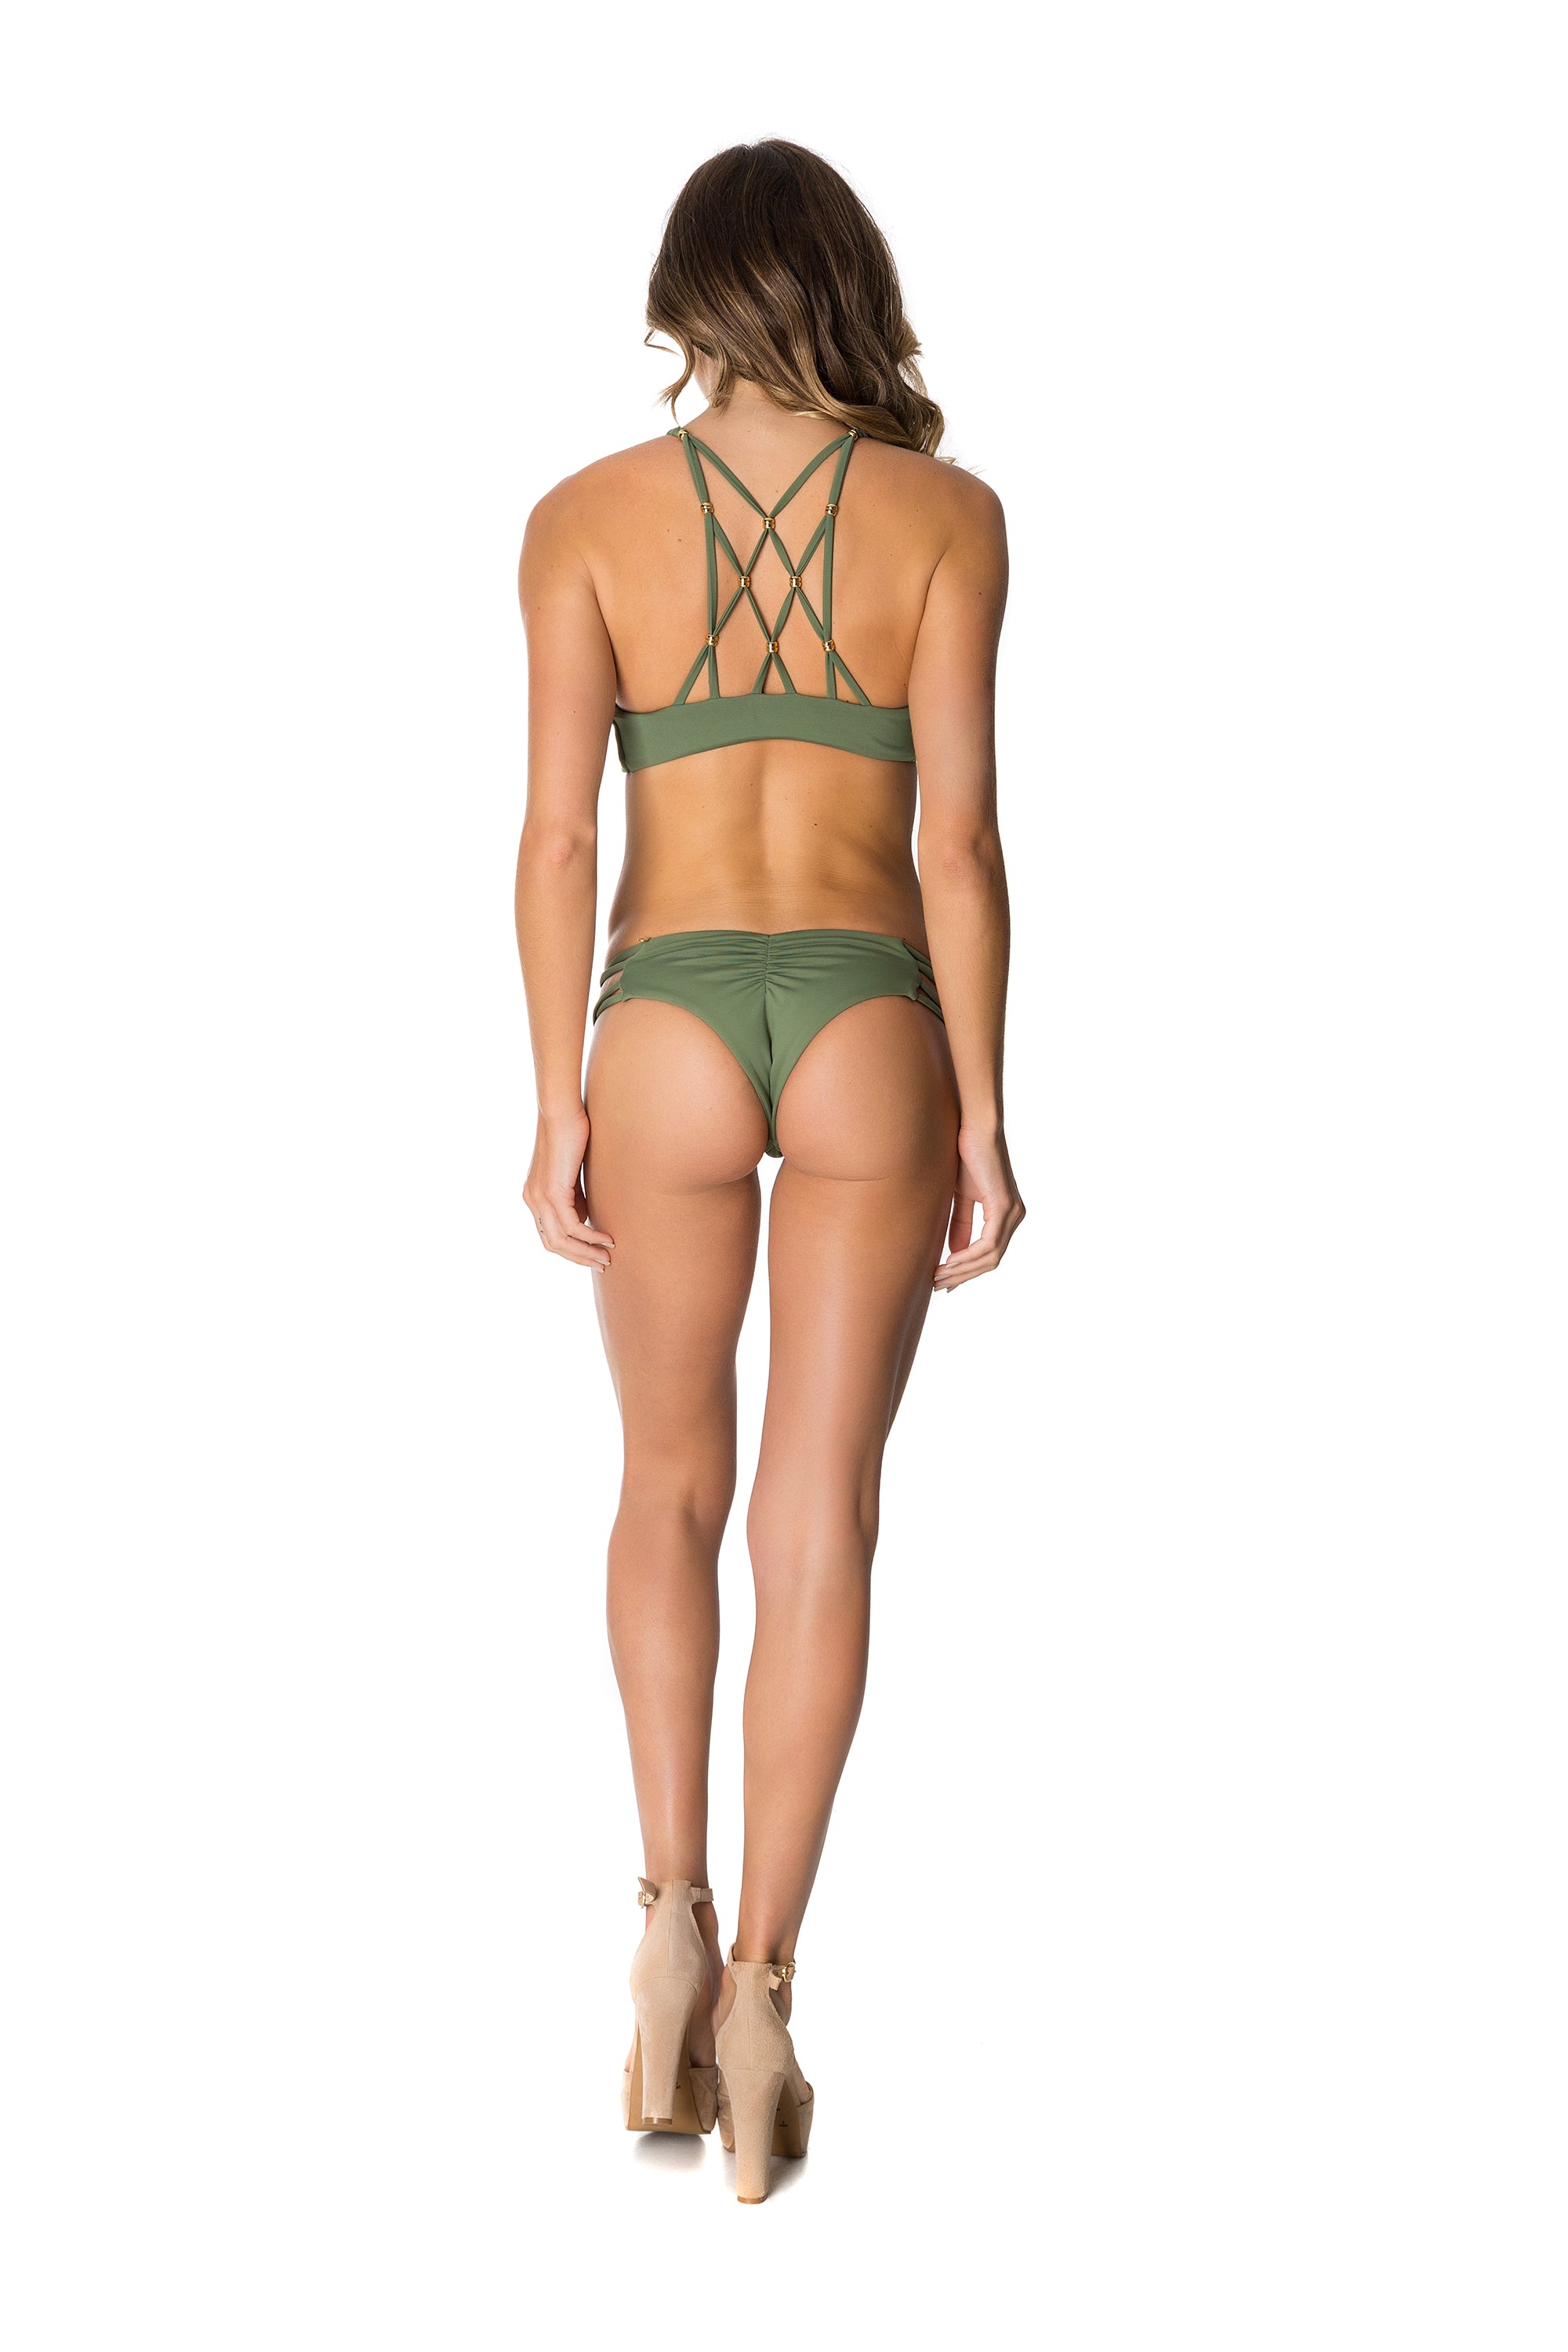 Mairin Bikini in Olive Green - Lybethras Swimwear